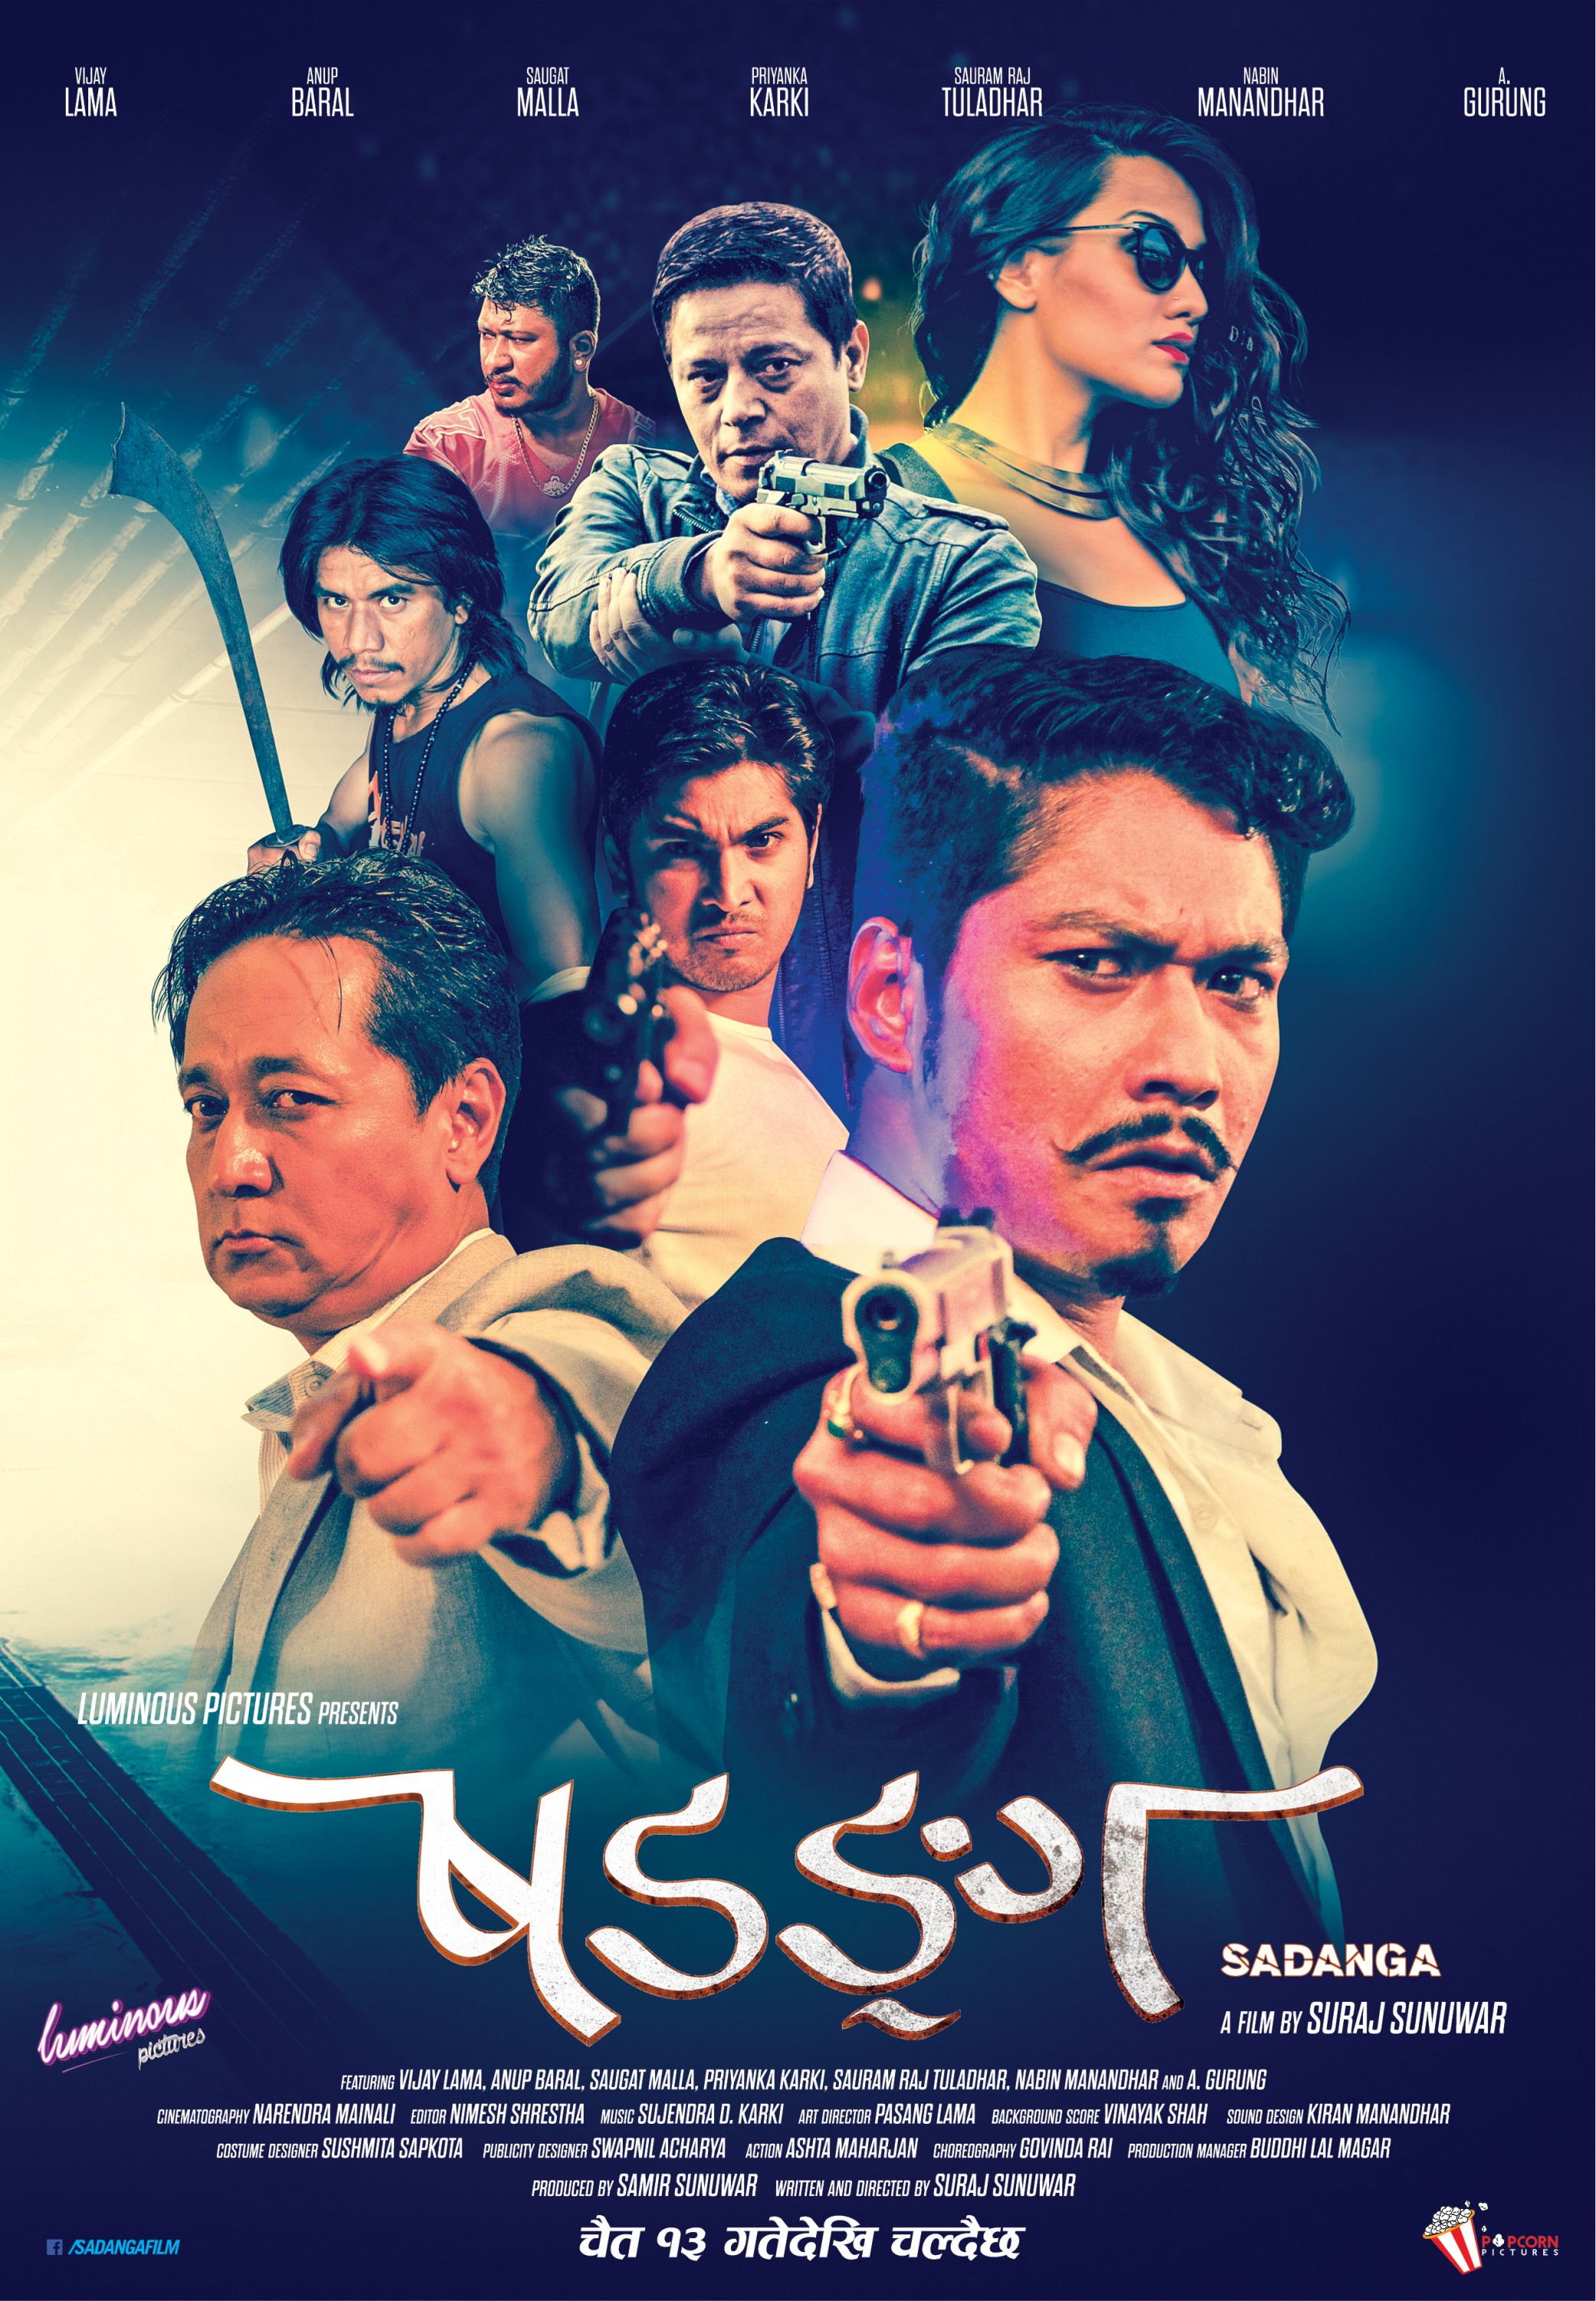 Mega Sized Movie Poster Image for Sadanga (#1 of 6)